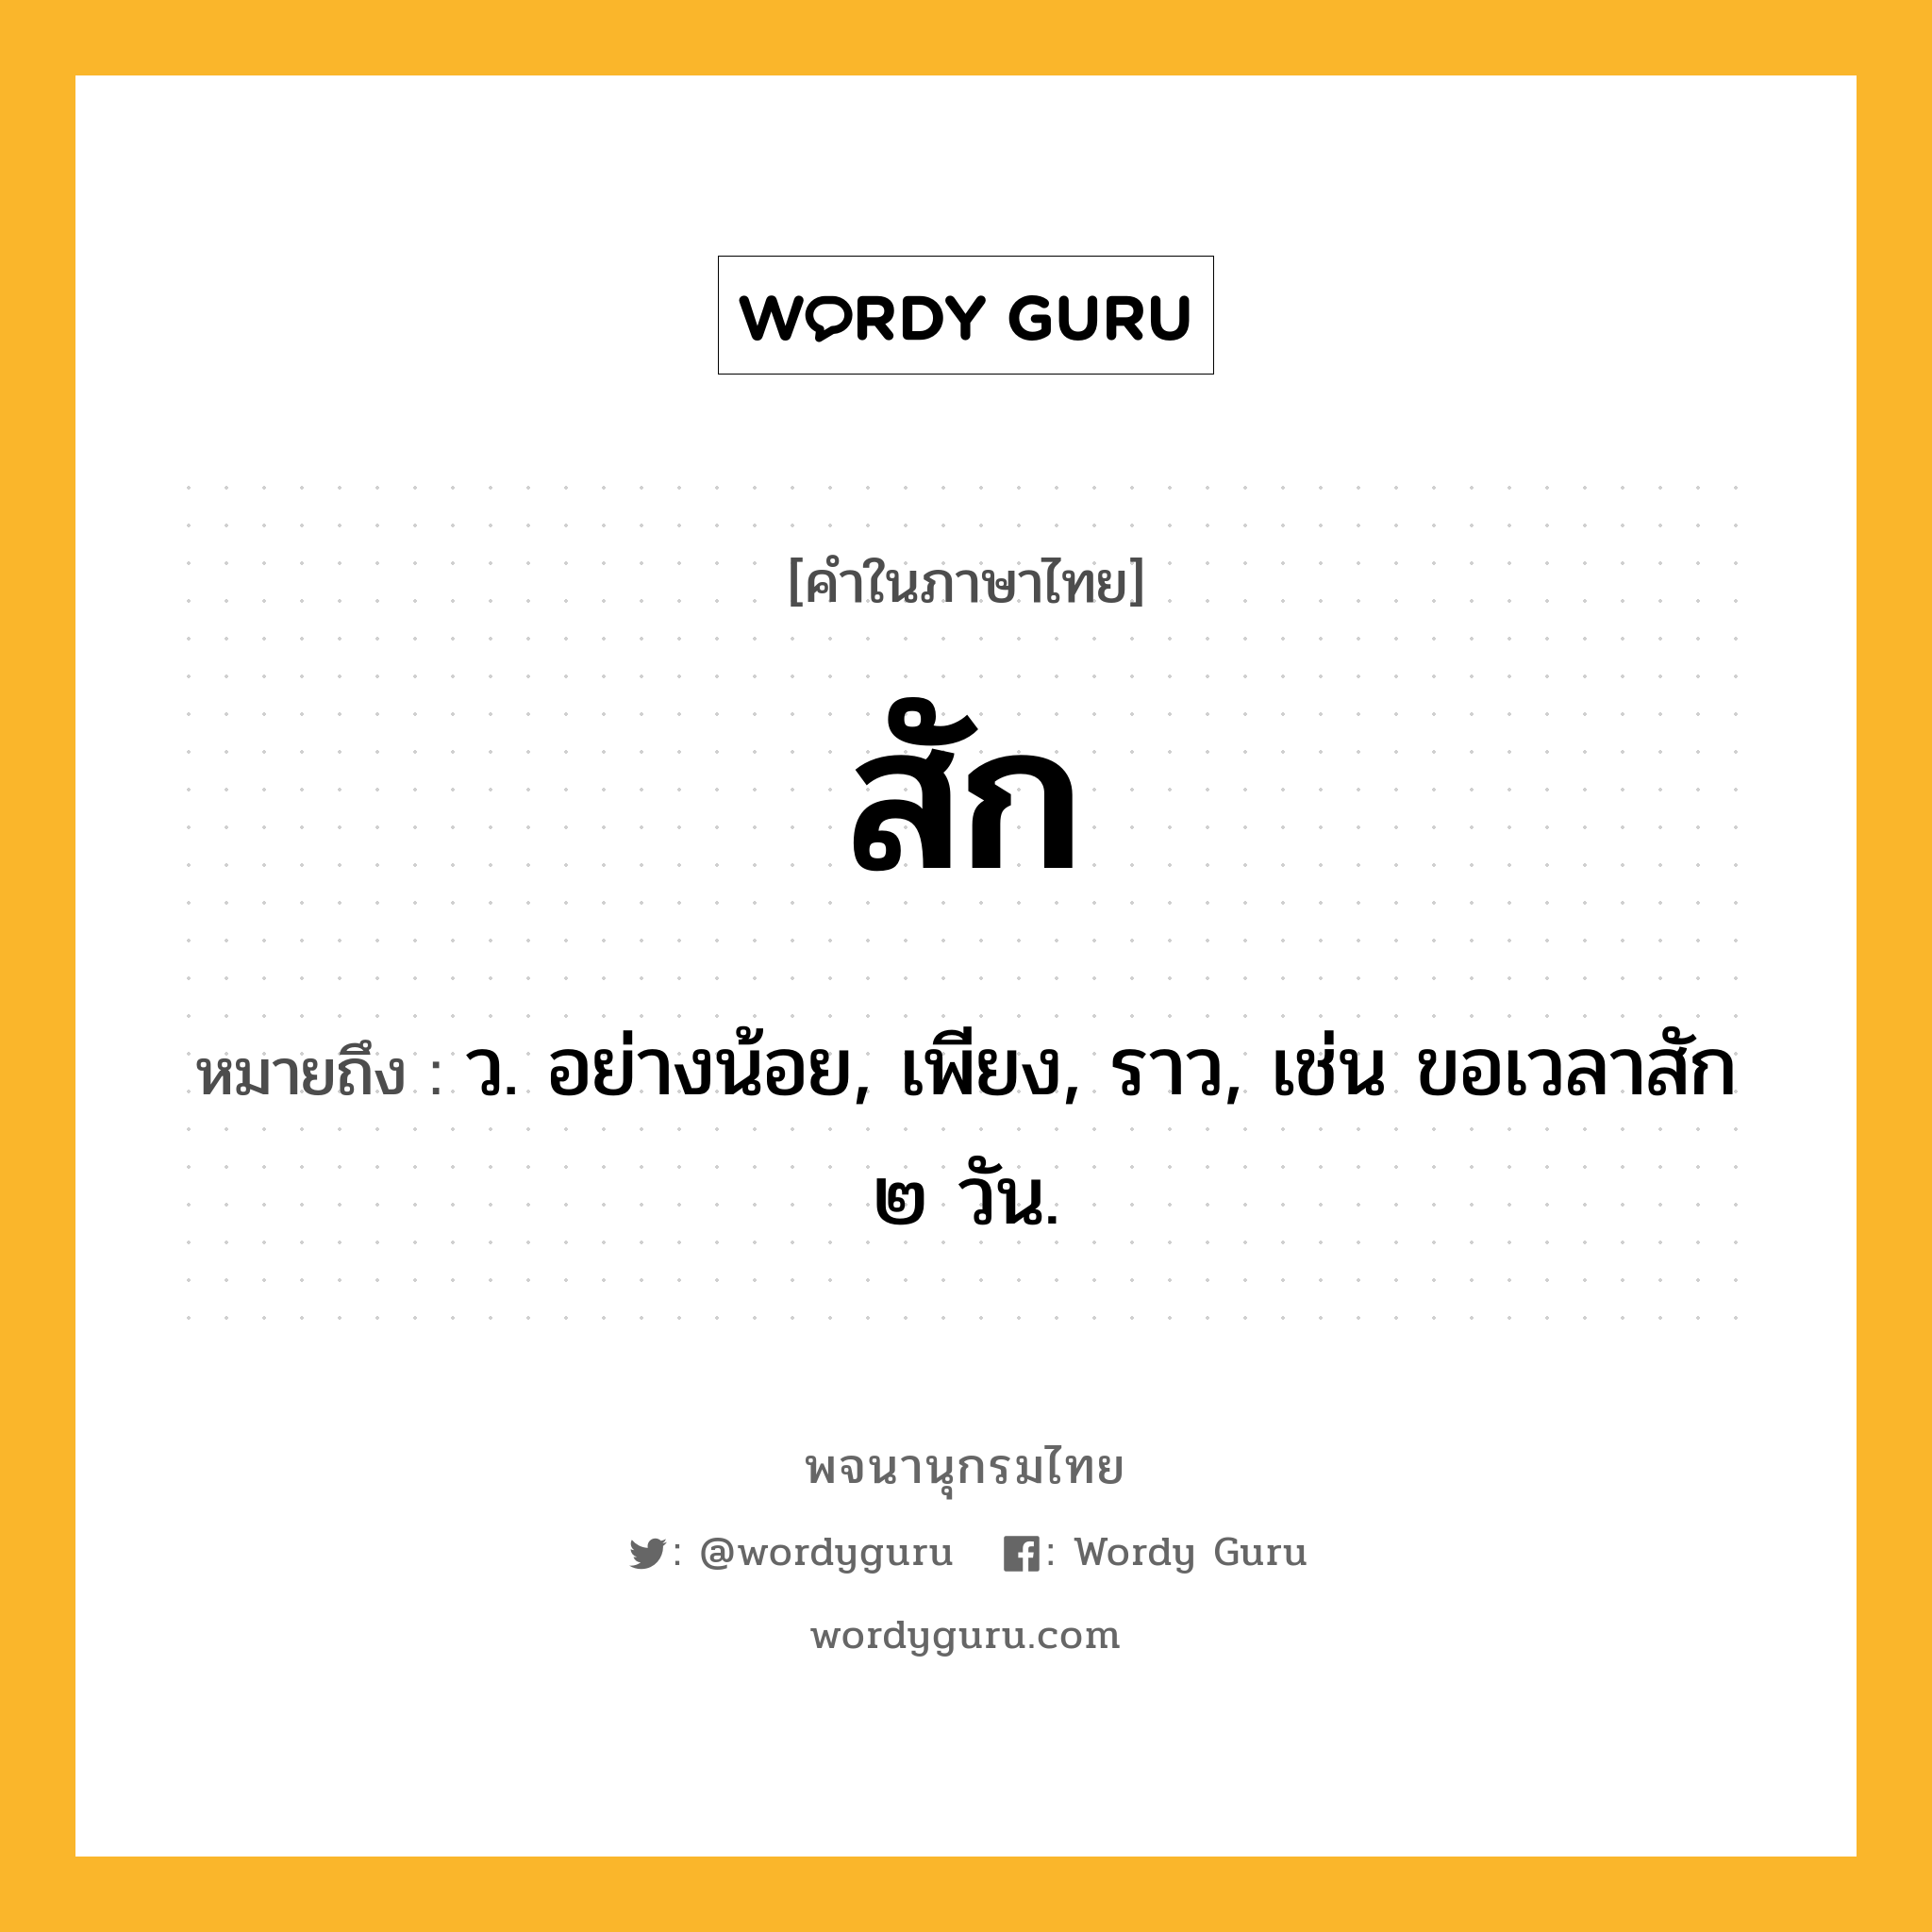 สัก หมายถึงอะไร?, คำในภาษาไทย สัก หมายถึง ว. อย่างน้อย, เพียง, ราว, เช่น ขอเวลาสัก ๒ วัน.